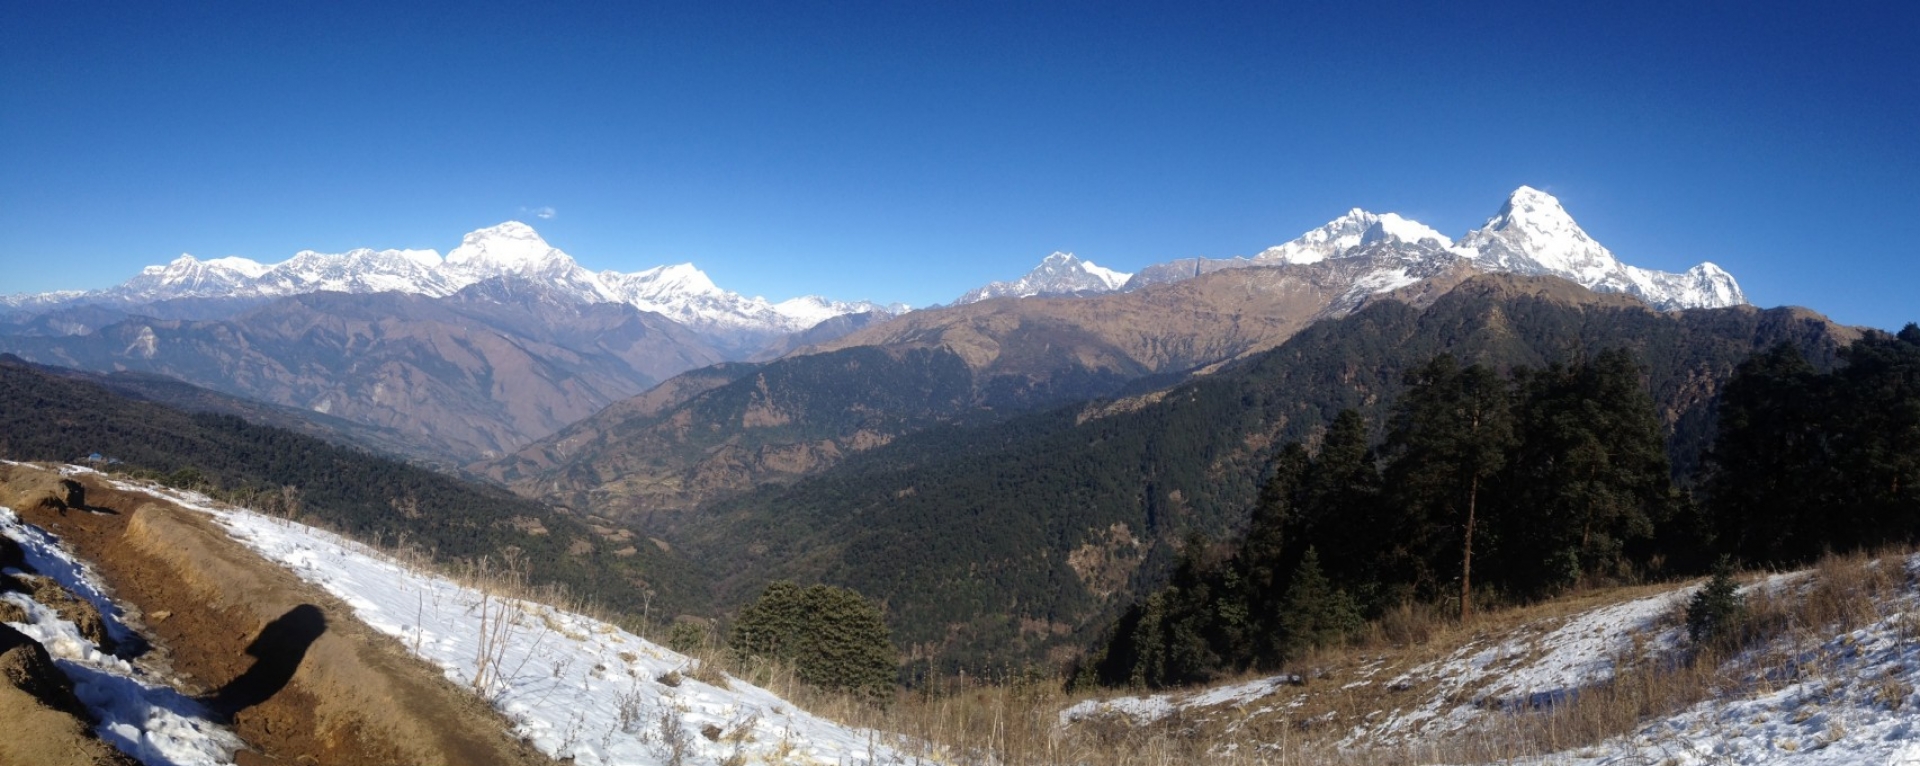 View of Mt. Dhaulagiri and mt. Annapurna ranges  near Ghorepani 